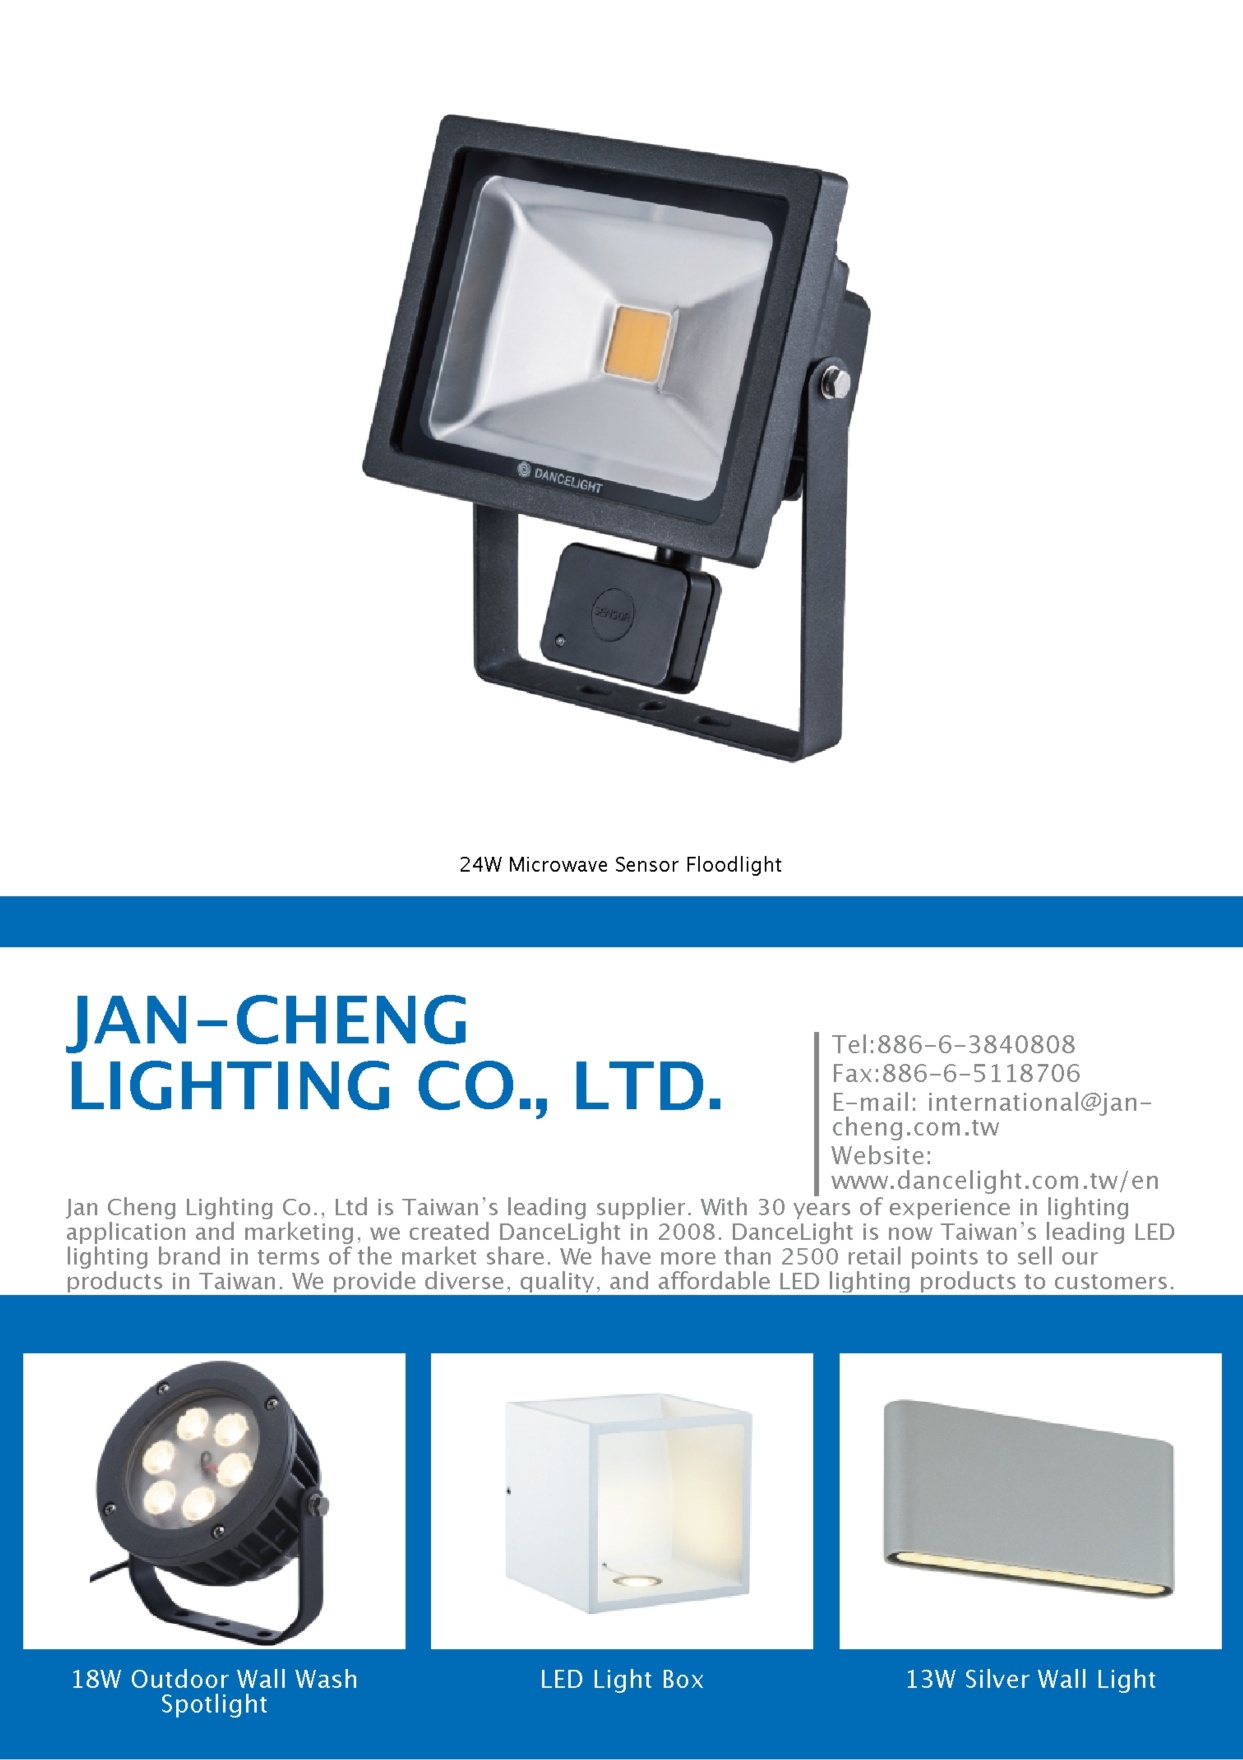 JAN-CHENG LIGHTING CO., LTD.